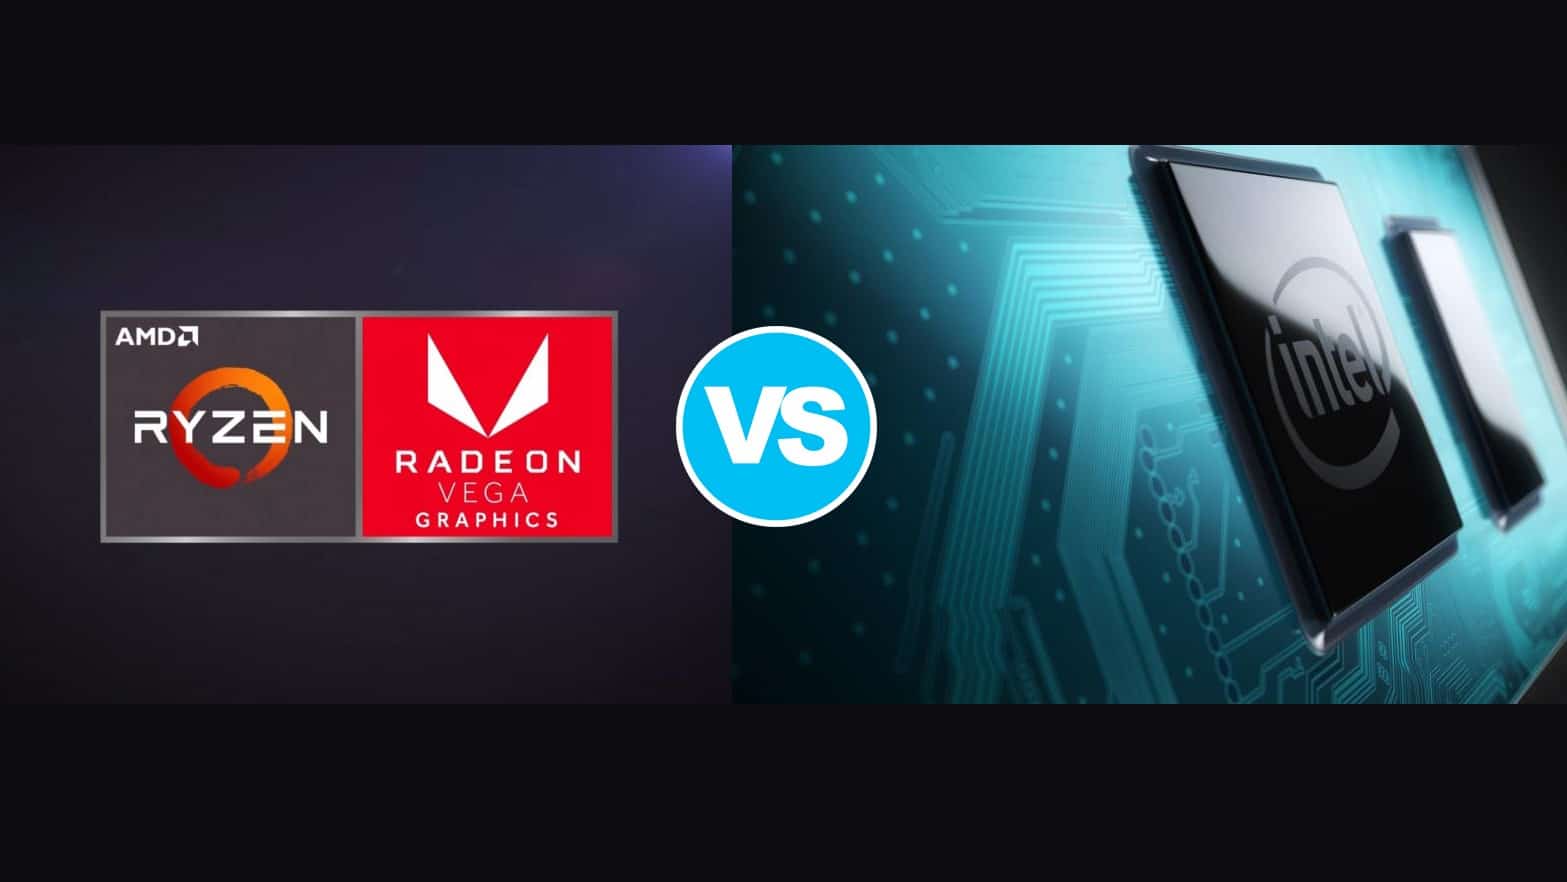 Intel-UHD-Graphics-G1-VS-AMD-Radeon-RX-Vega-5